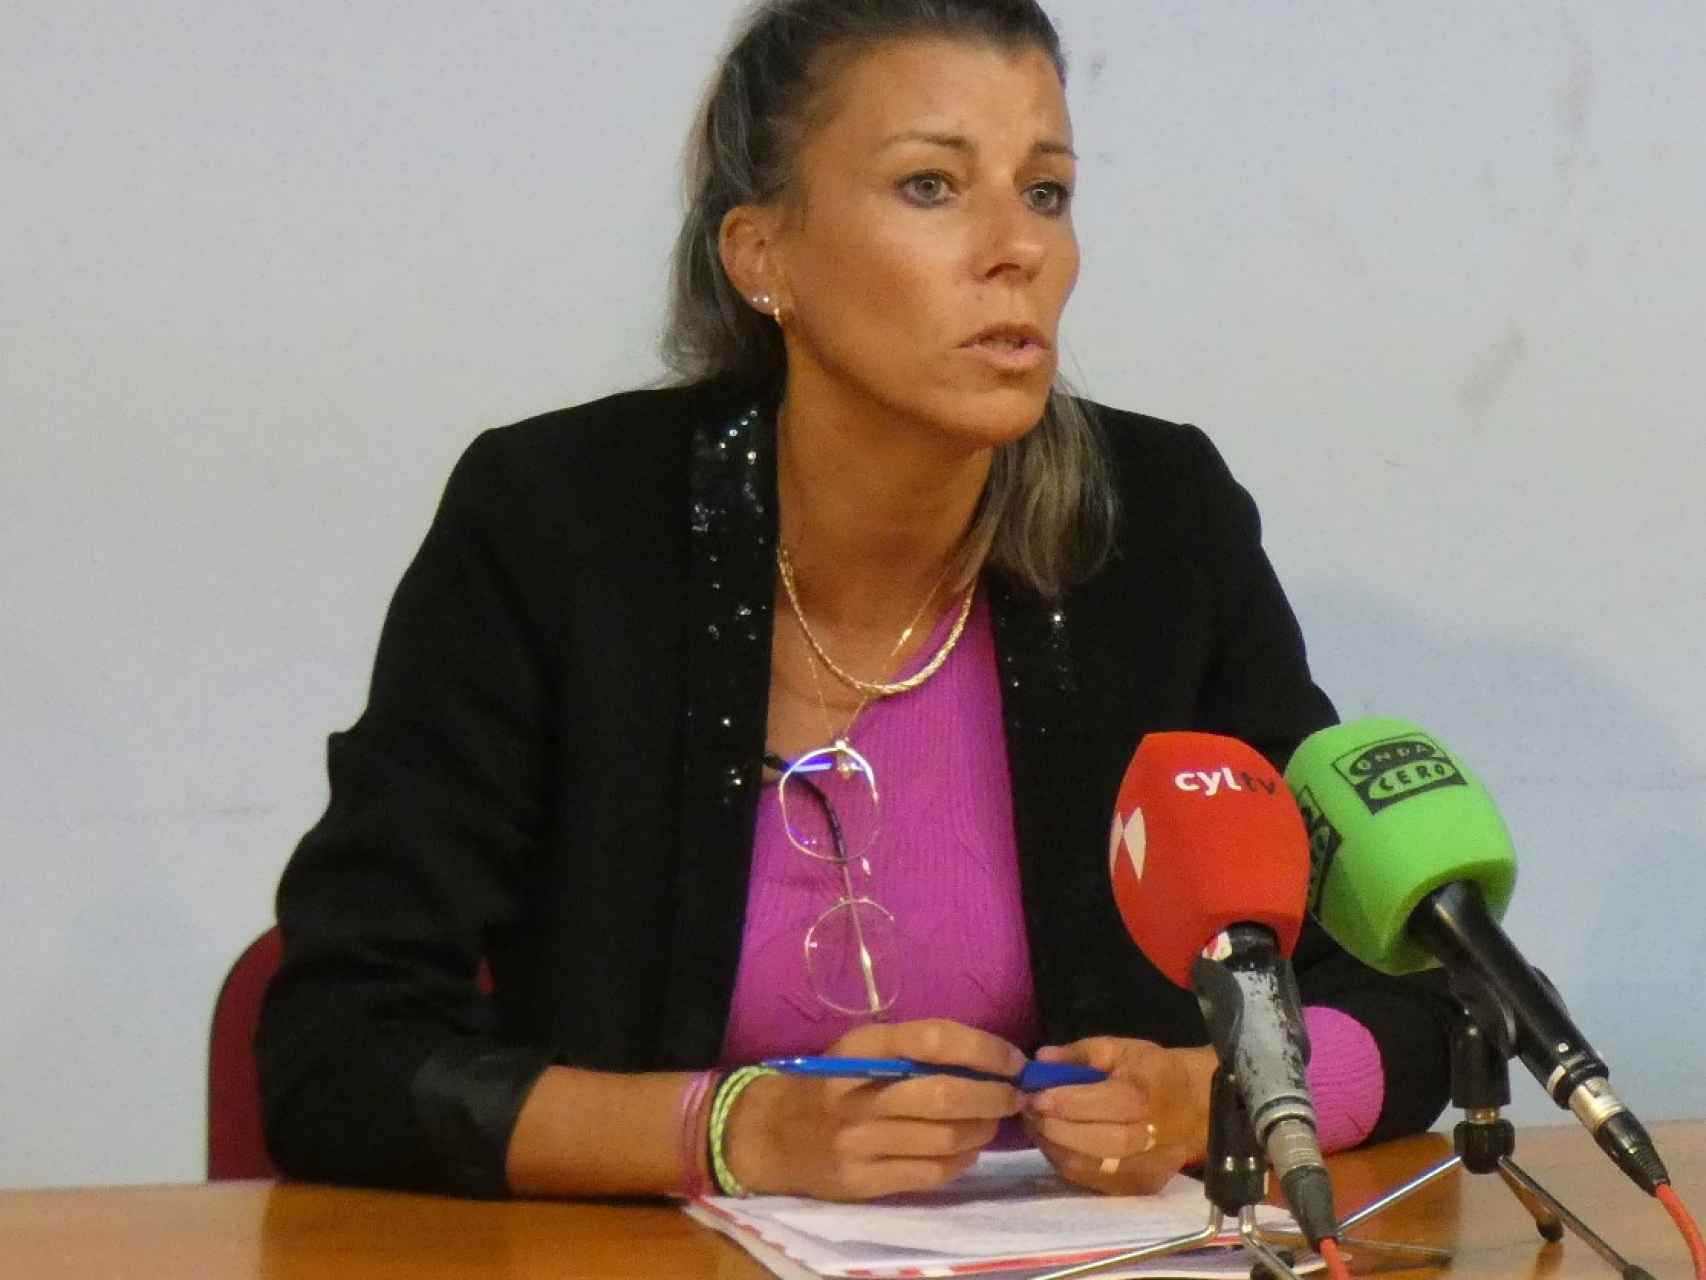 Eva Arias, exatleta, candidata del PSOE a la alcaldía de Ávila